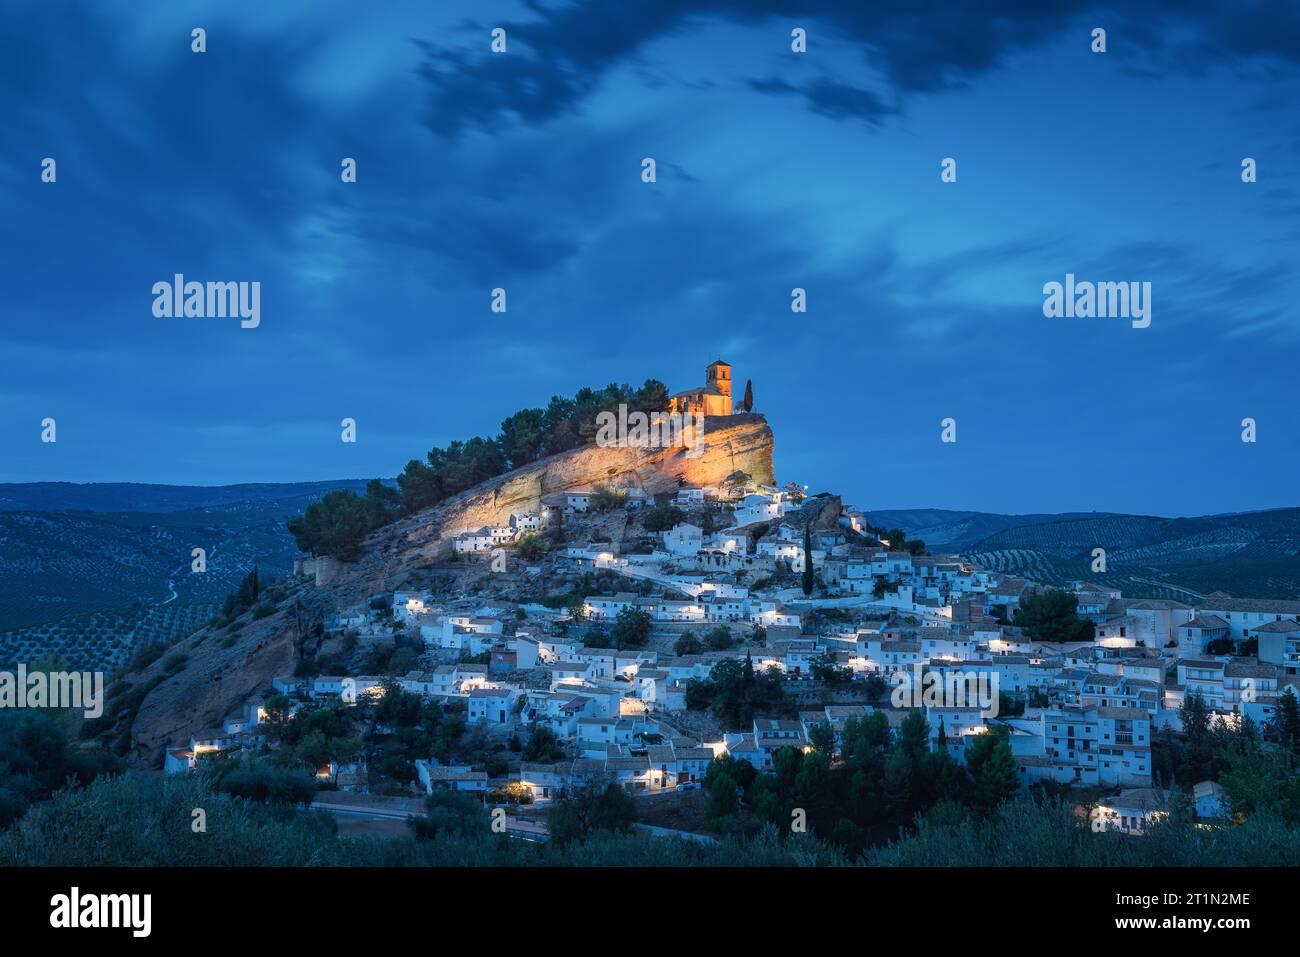 Vue nocturne d'une ville ancienne avec un château mauresque au sommet de la colline, Montefrio, Grenade, Espagne Banque D'Images